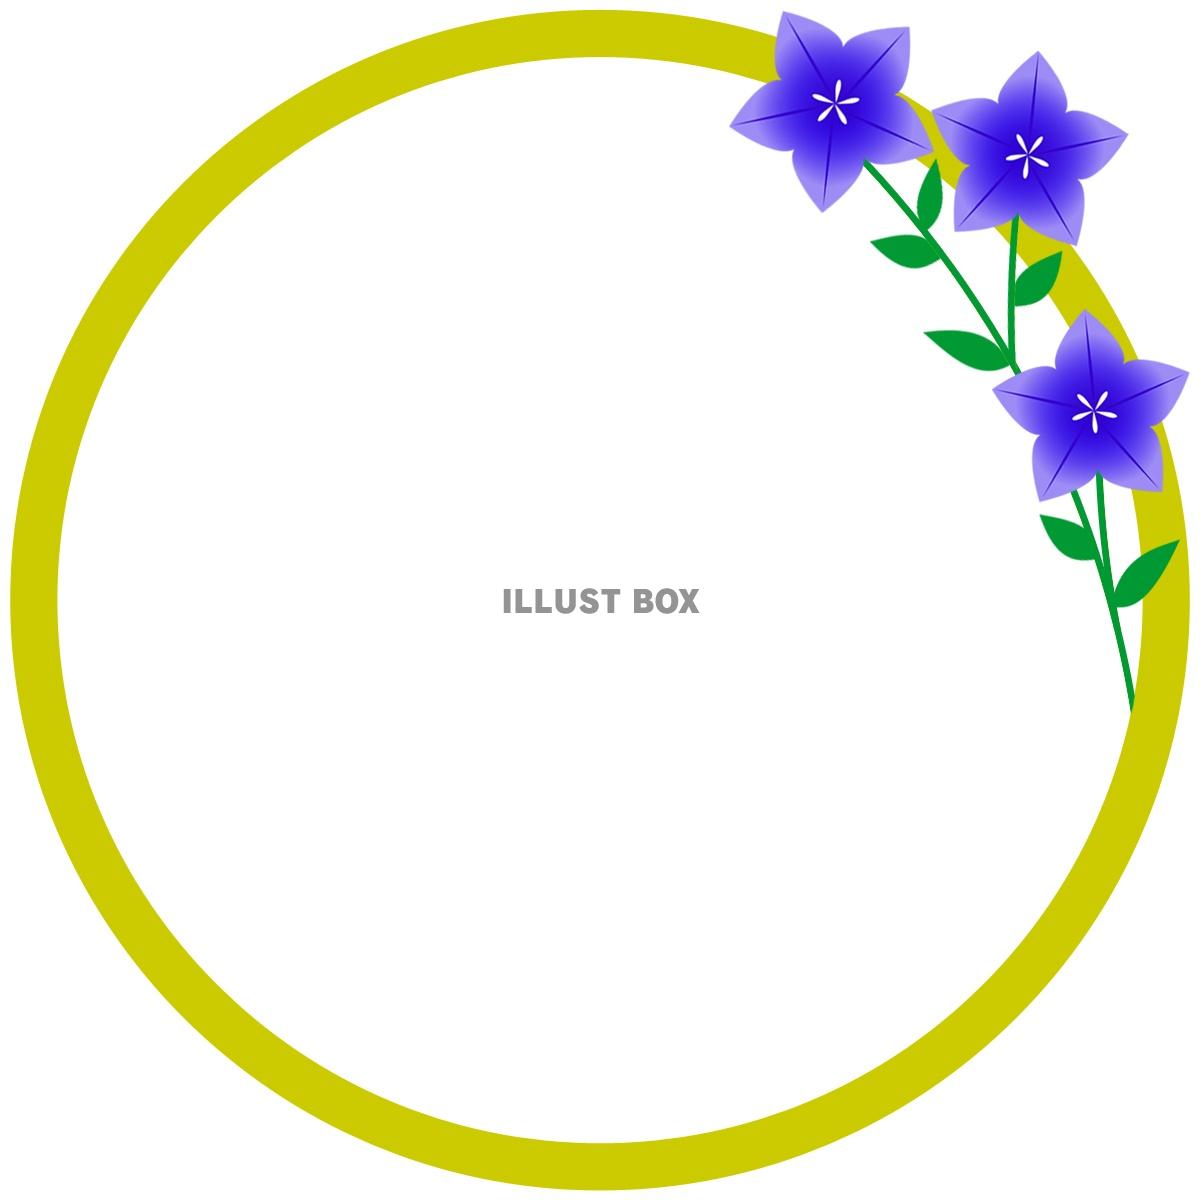 桔梗の花模様フレームシンプル飾り枠背景イラスト